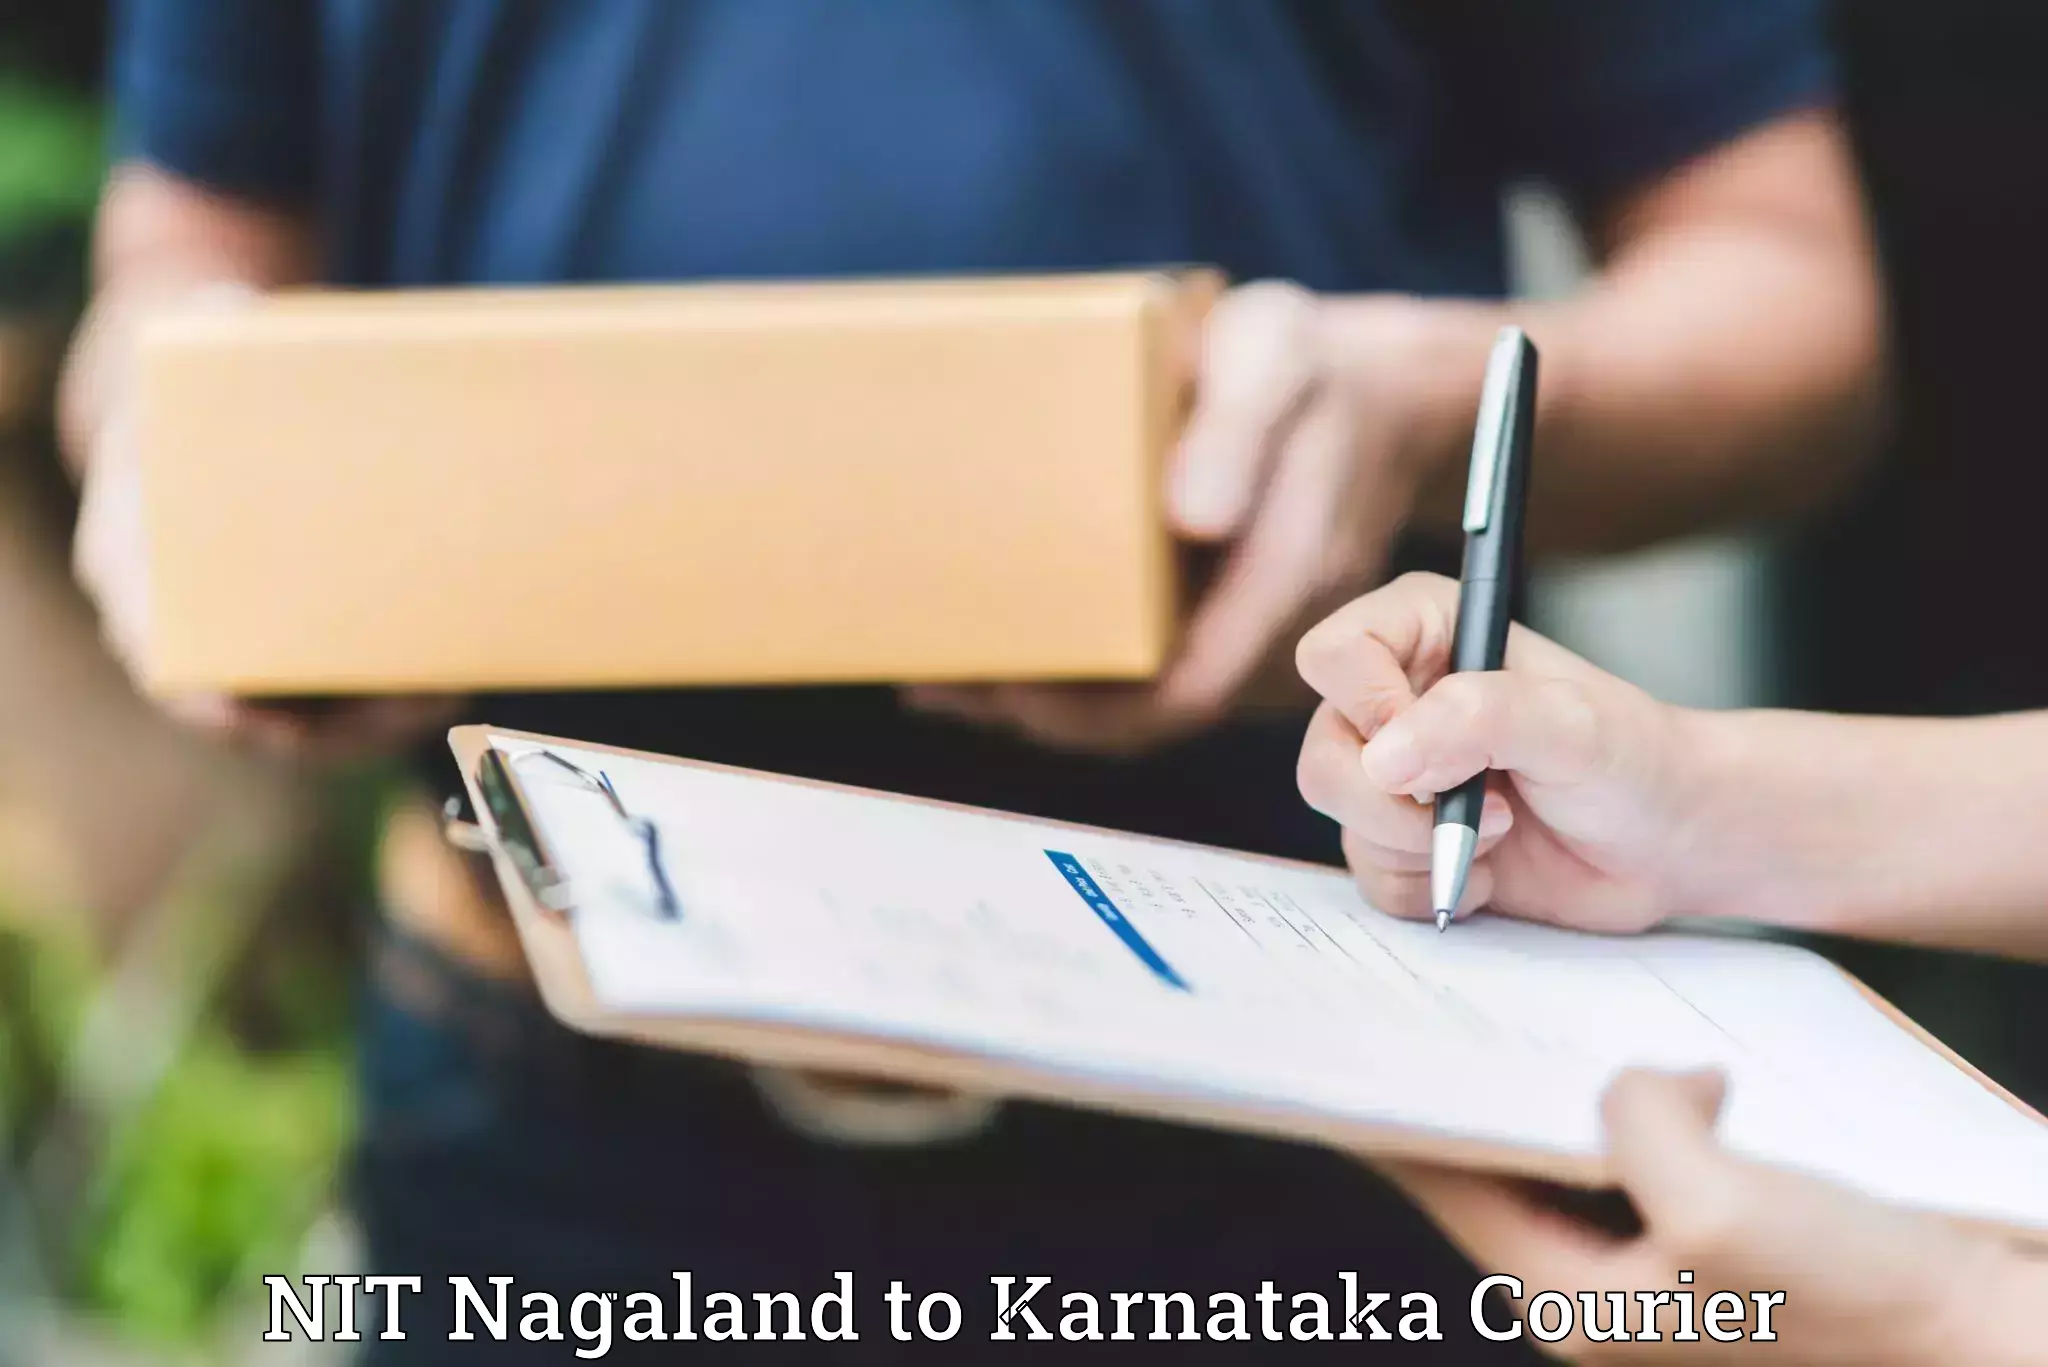 Home shifting services NIT Nagaland to Karnataka